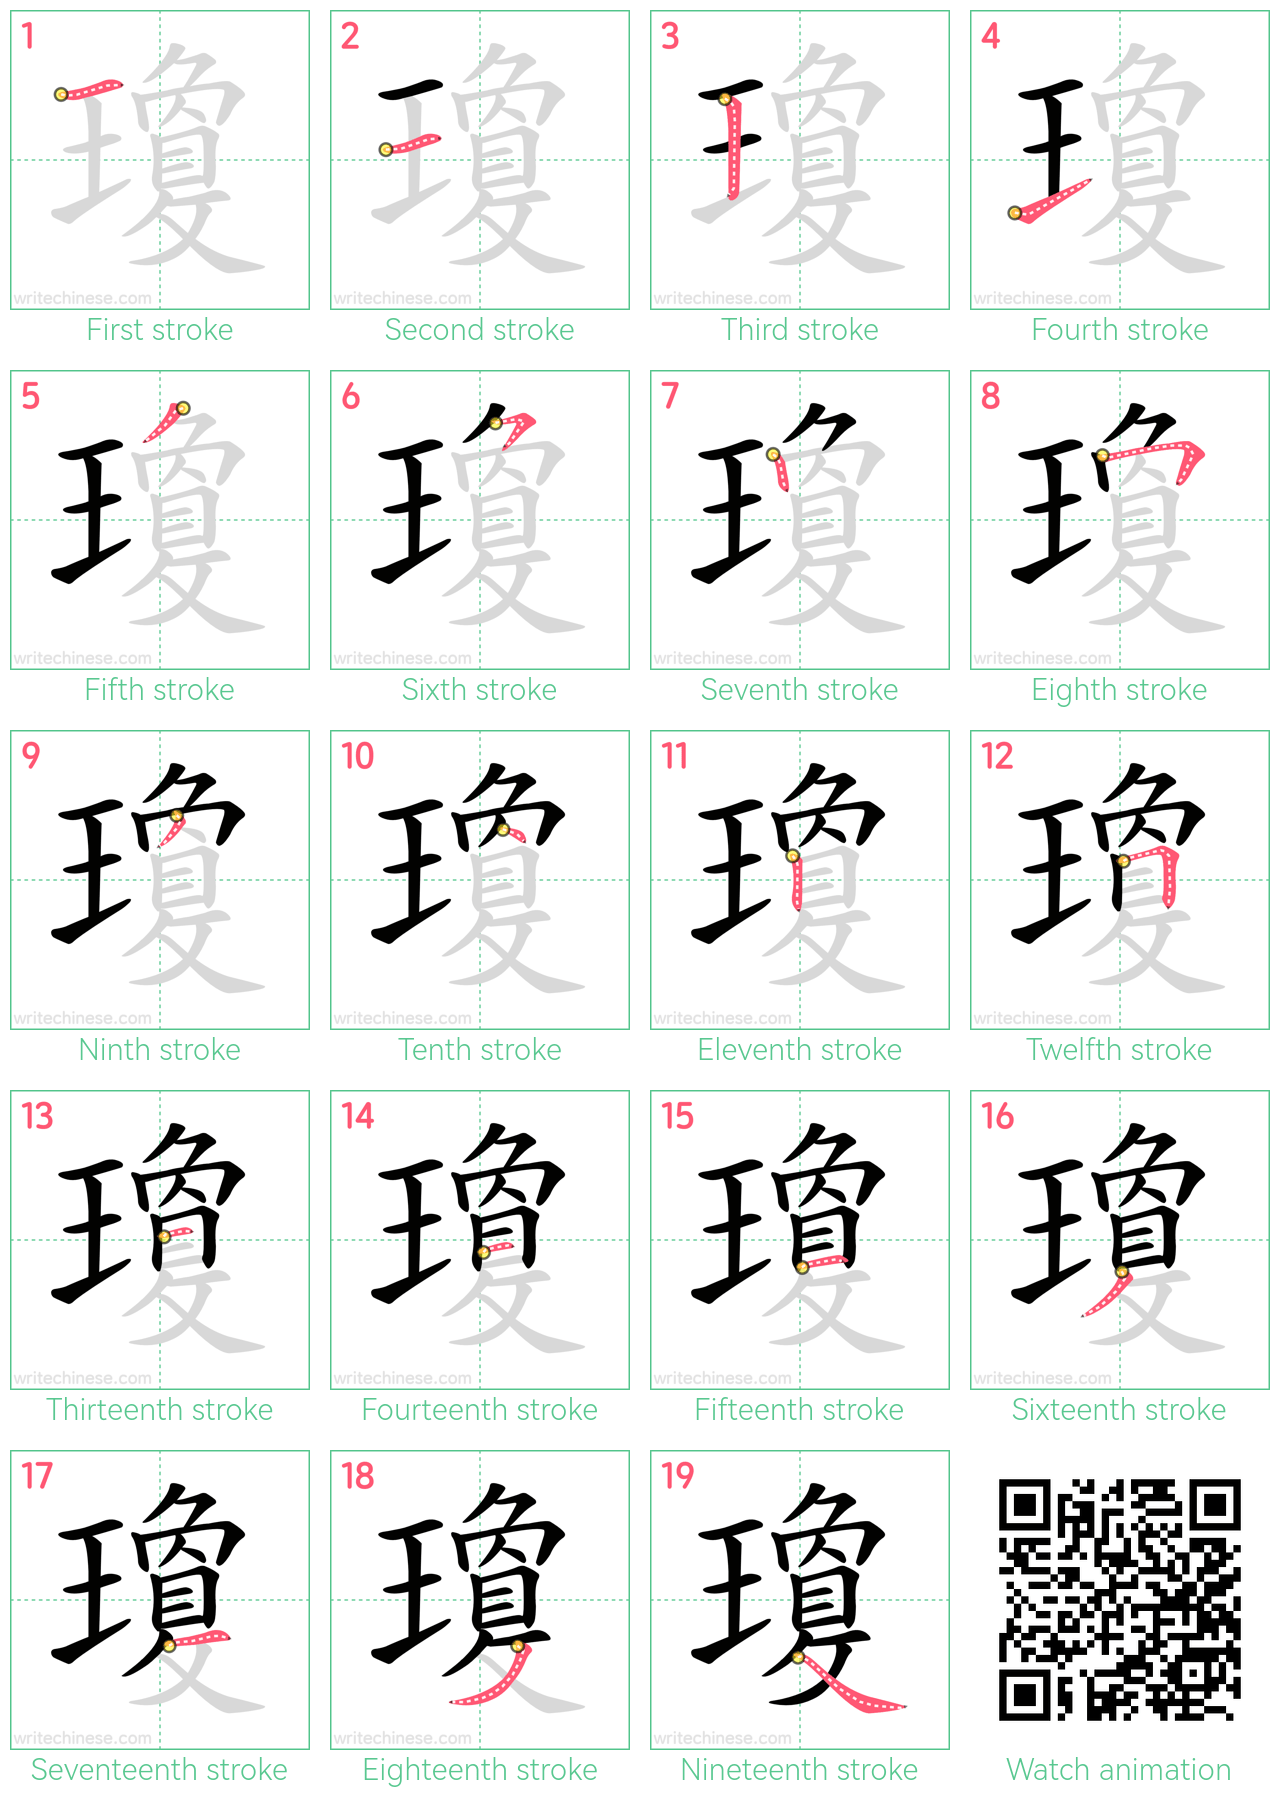 瓊 step-by-step stroke order diagrams